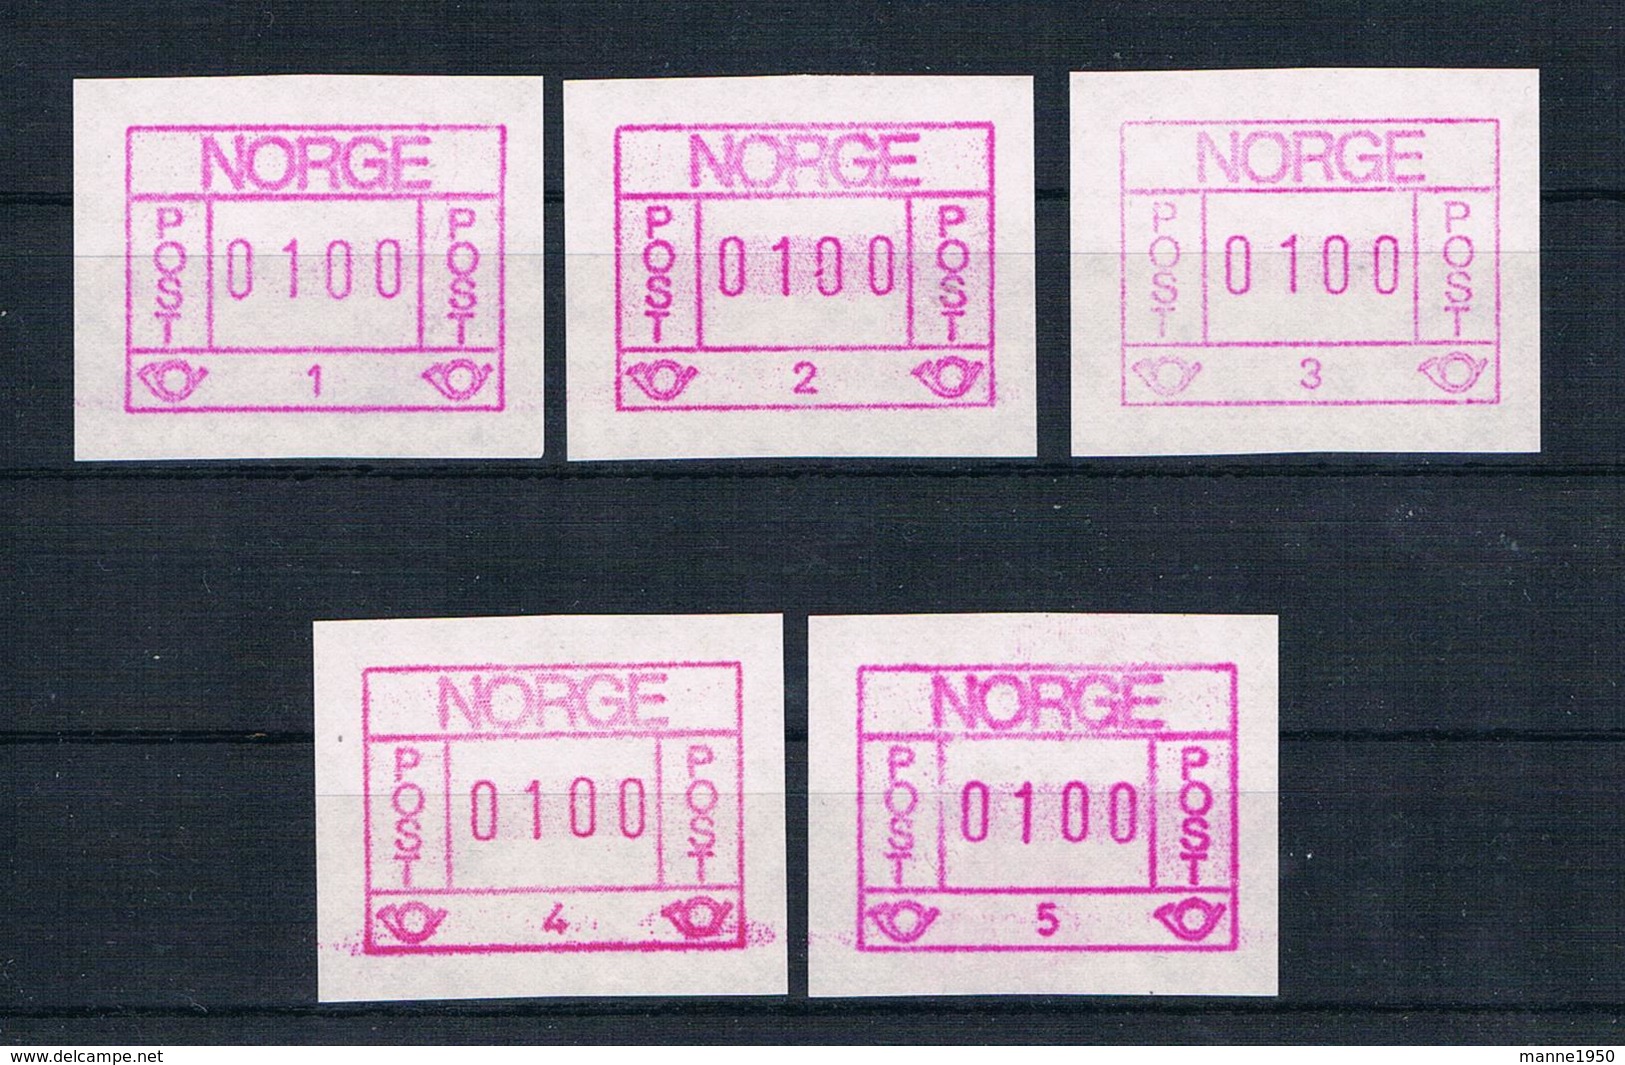 Norwegen 1978 Automatenmarken Mi.Nr. 1 ** - Automatenmarken [ATM]